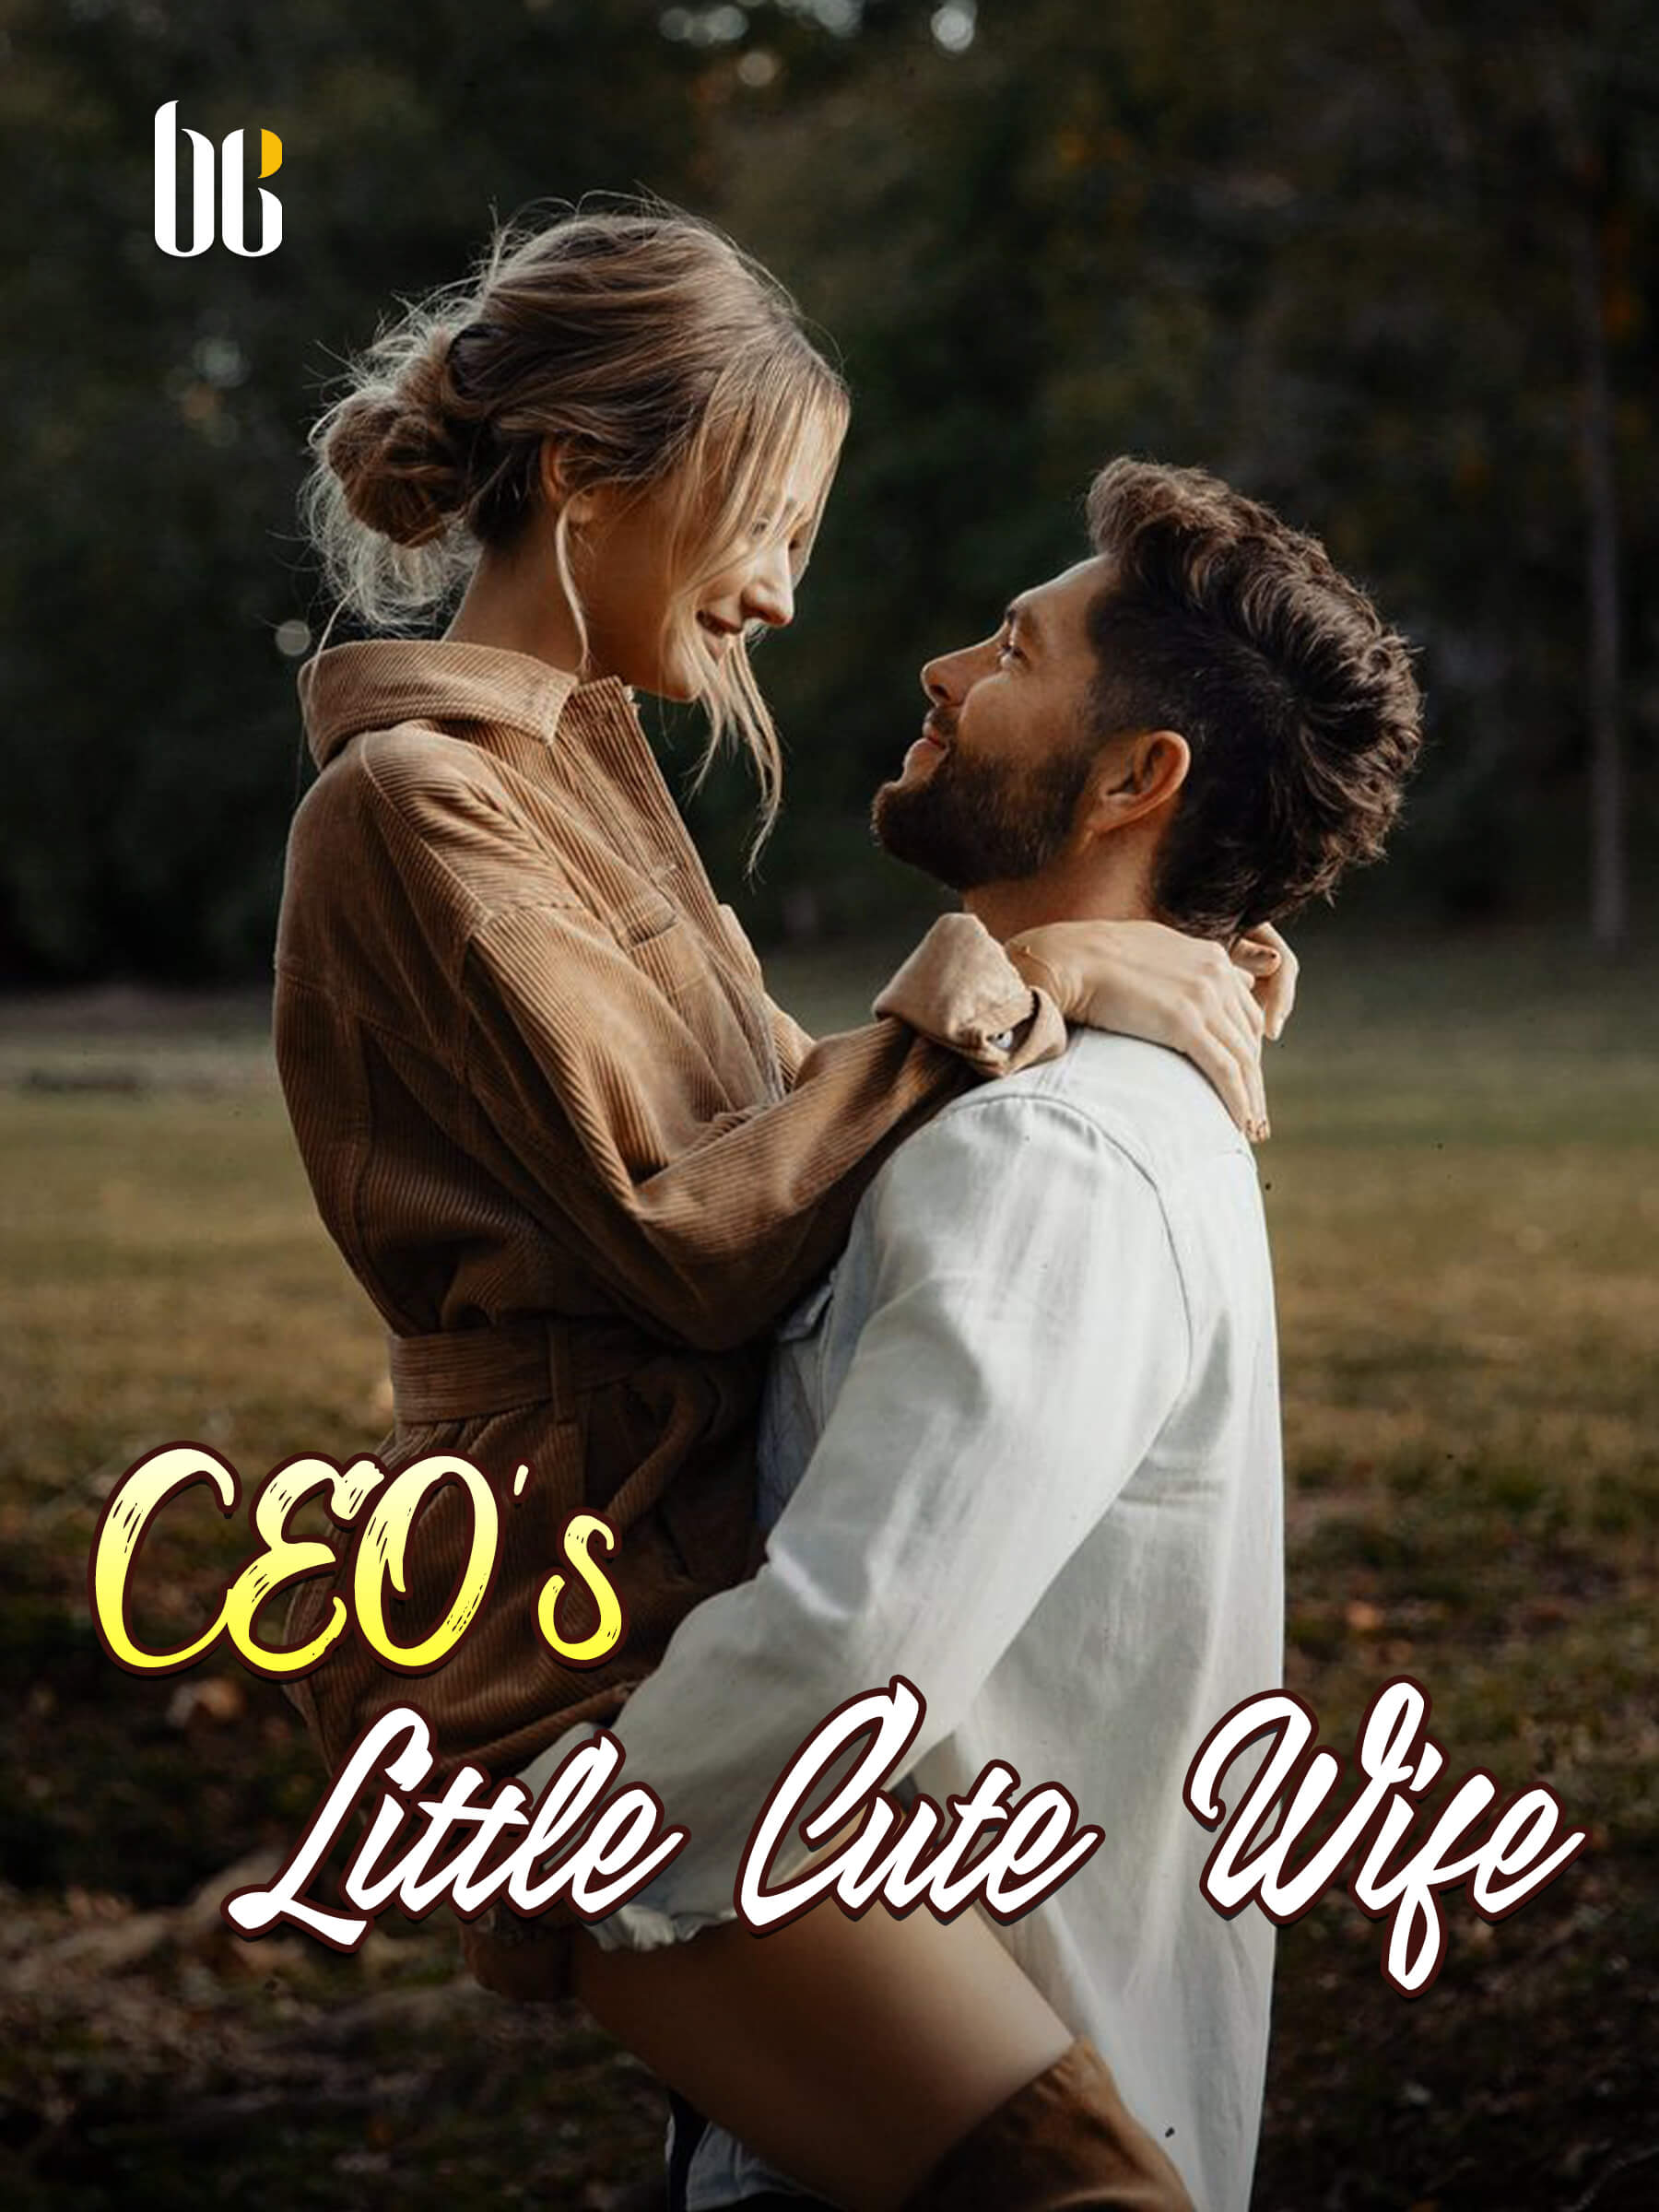 CEO's Little Cute Wife